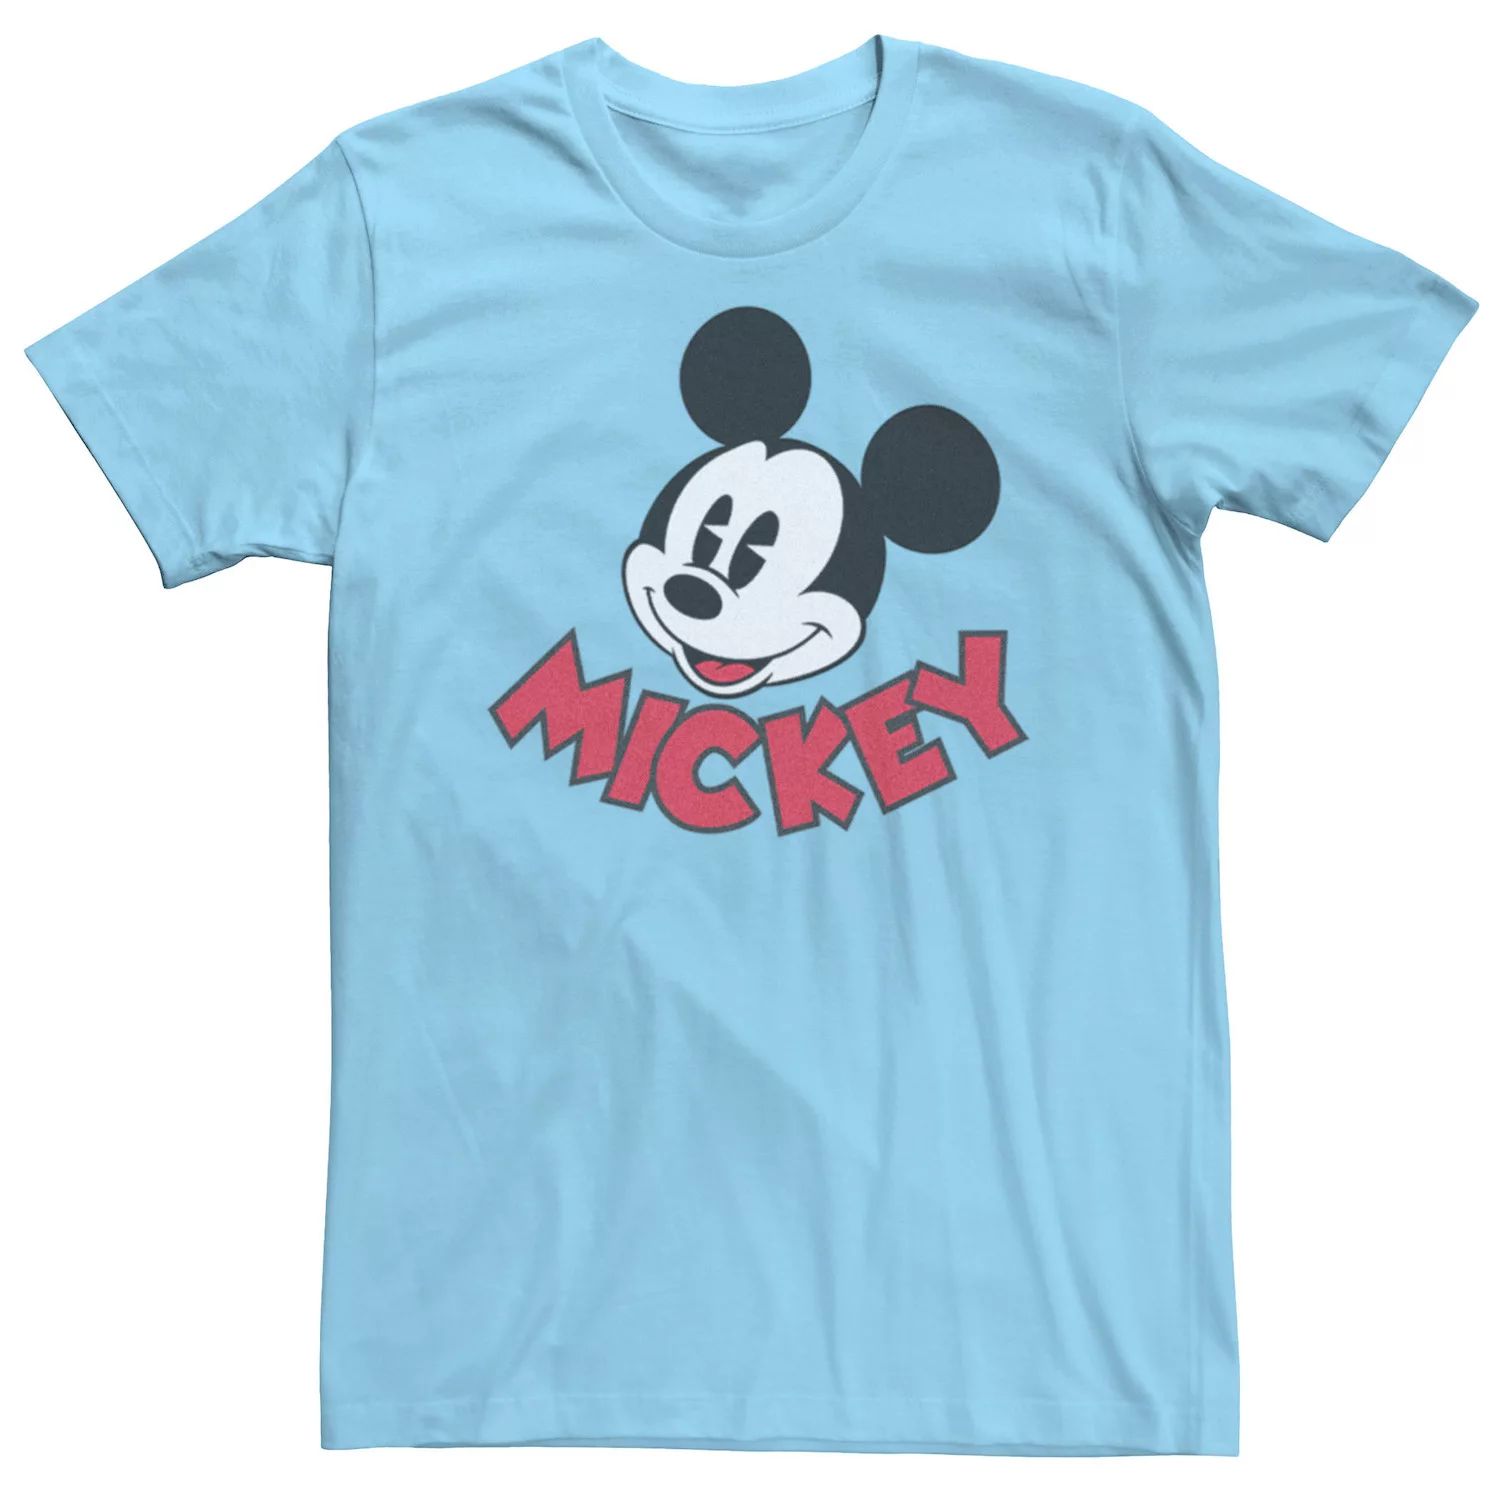 Мужская футболка с изображением Микки Мауса Диснея Licensed Character мужская футболка с изображением микки мауса диснея множество микки licensed character